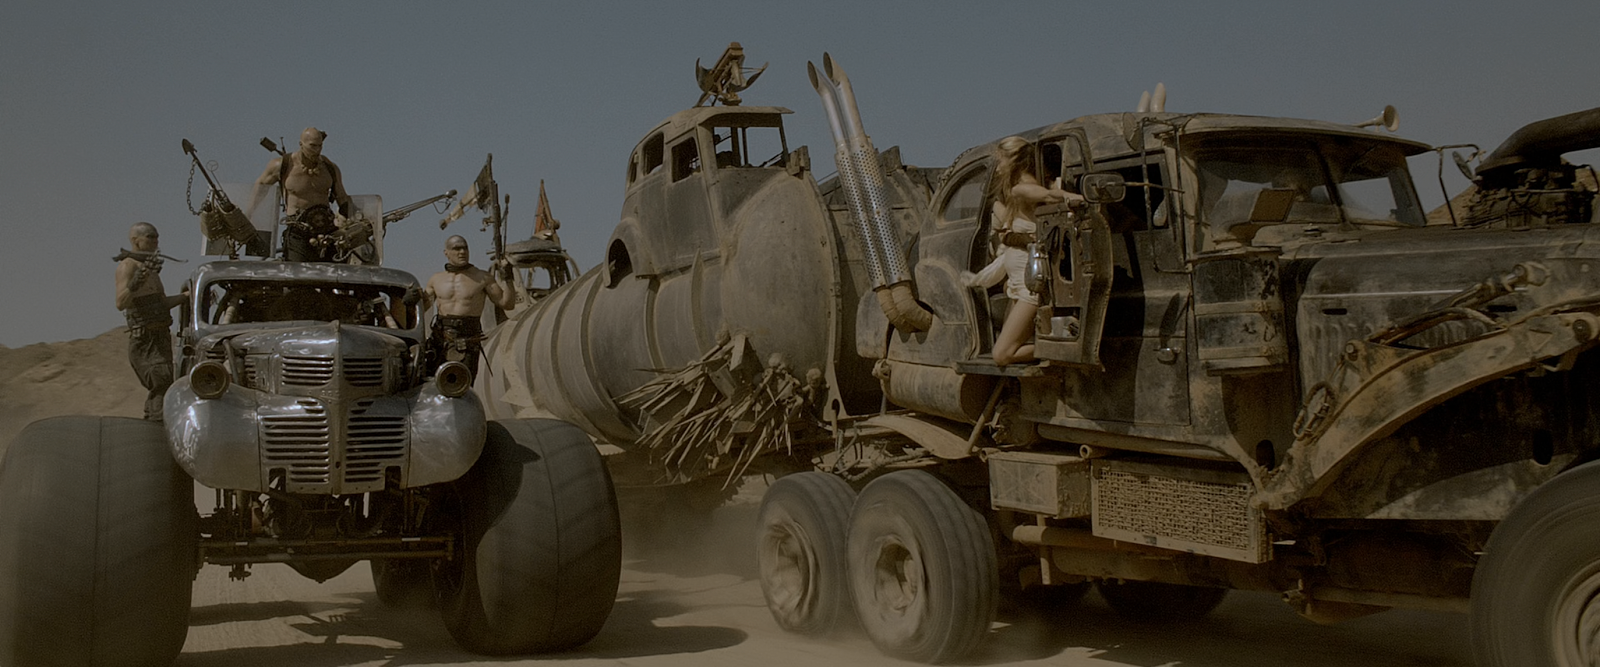  Mad Max Furia en la carretera (2015) 4K UHD HDR Latino